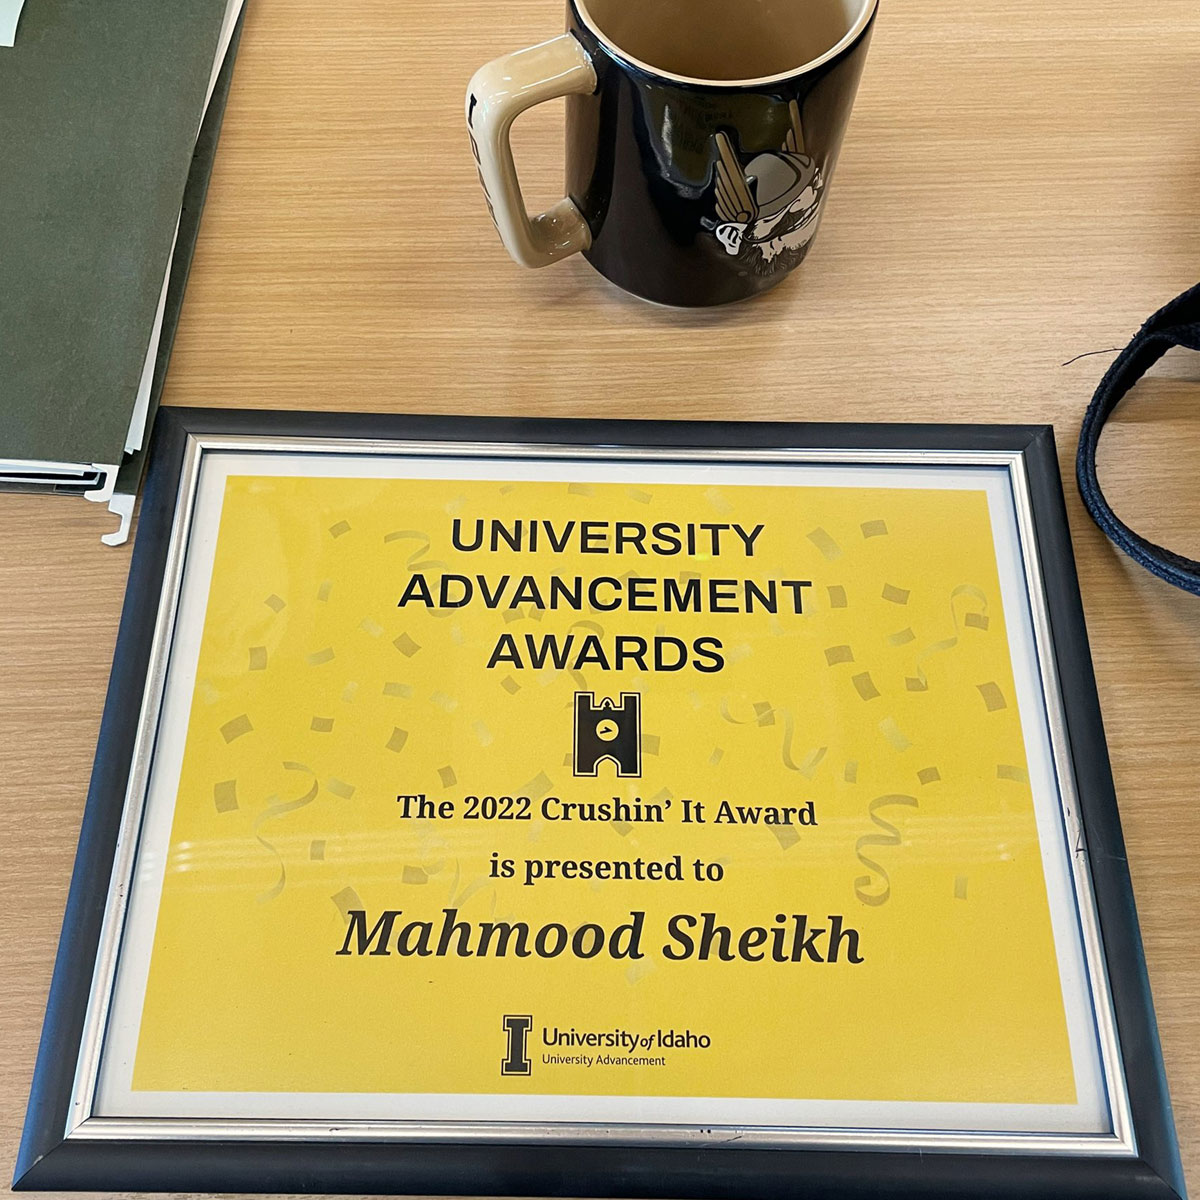 Mahmood Sheikh's Crushin’ It Award